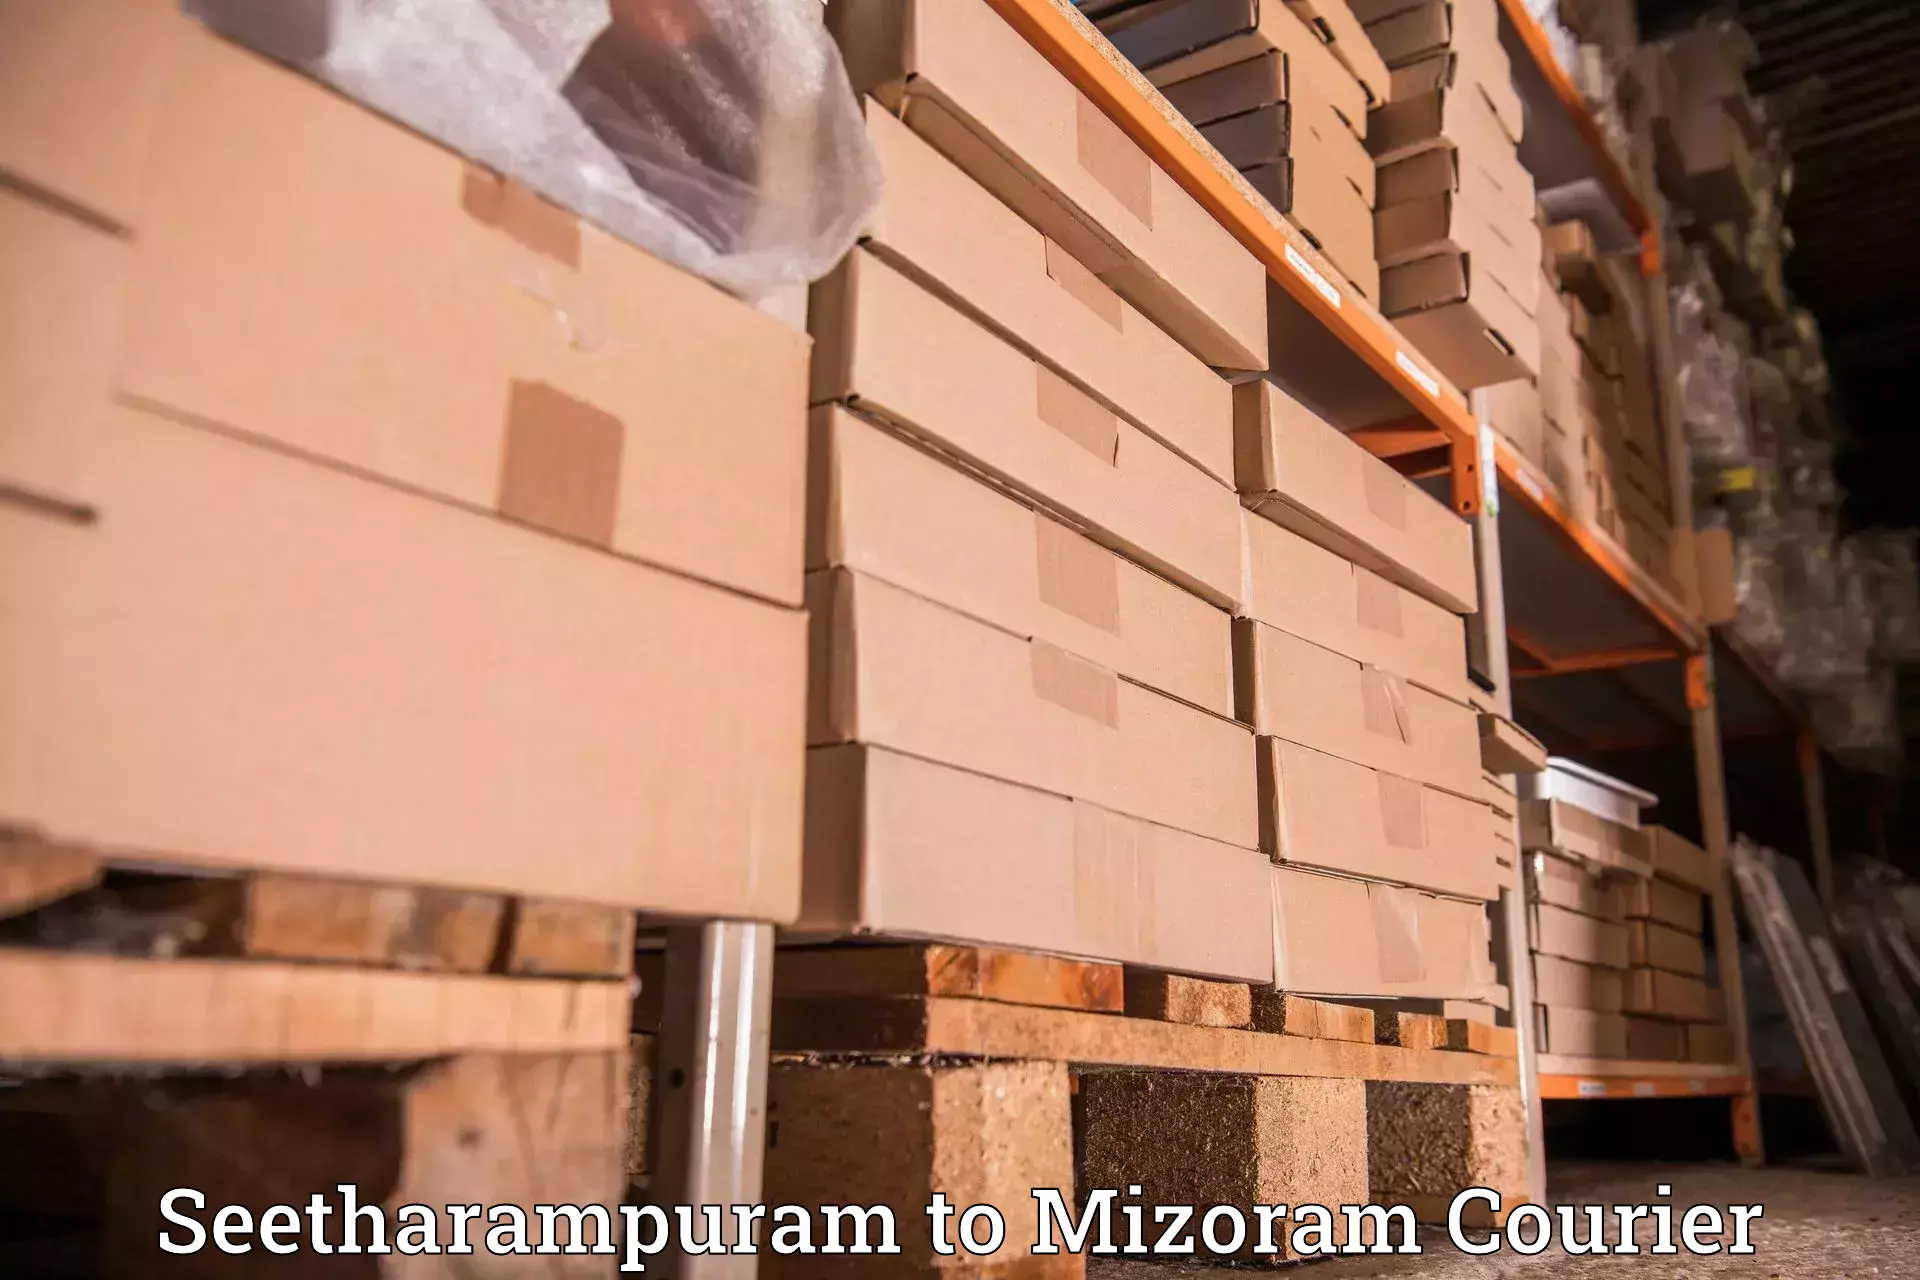 Door-to-door shipment in Seetharampuram to Darlawn